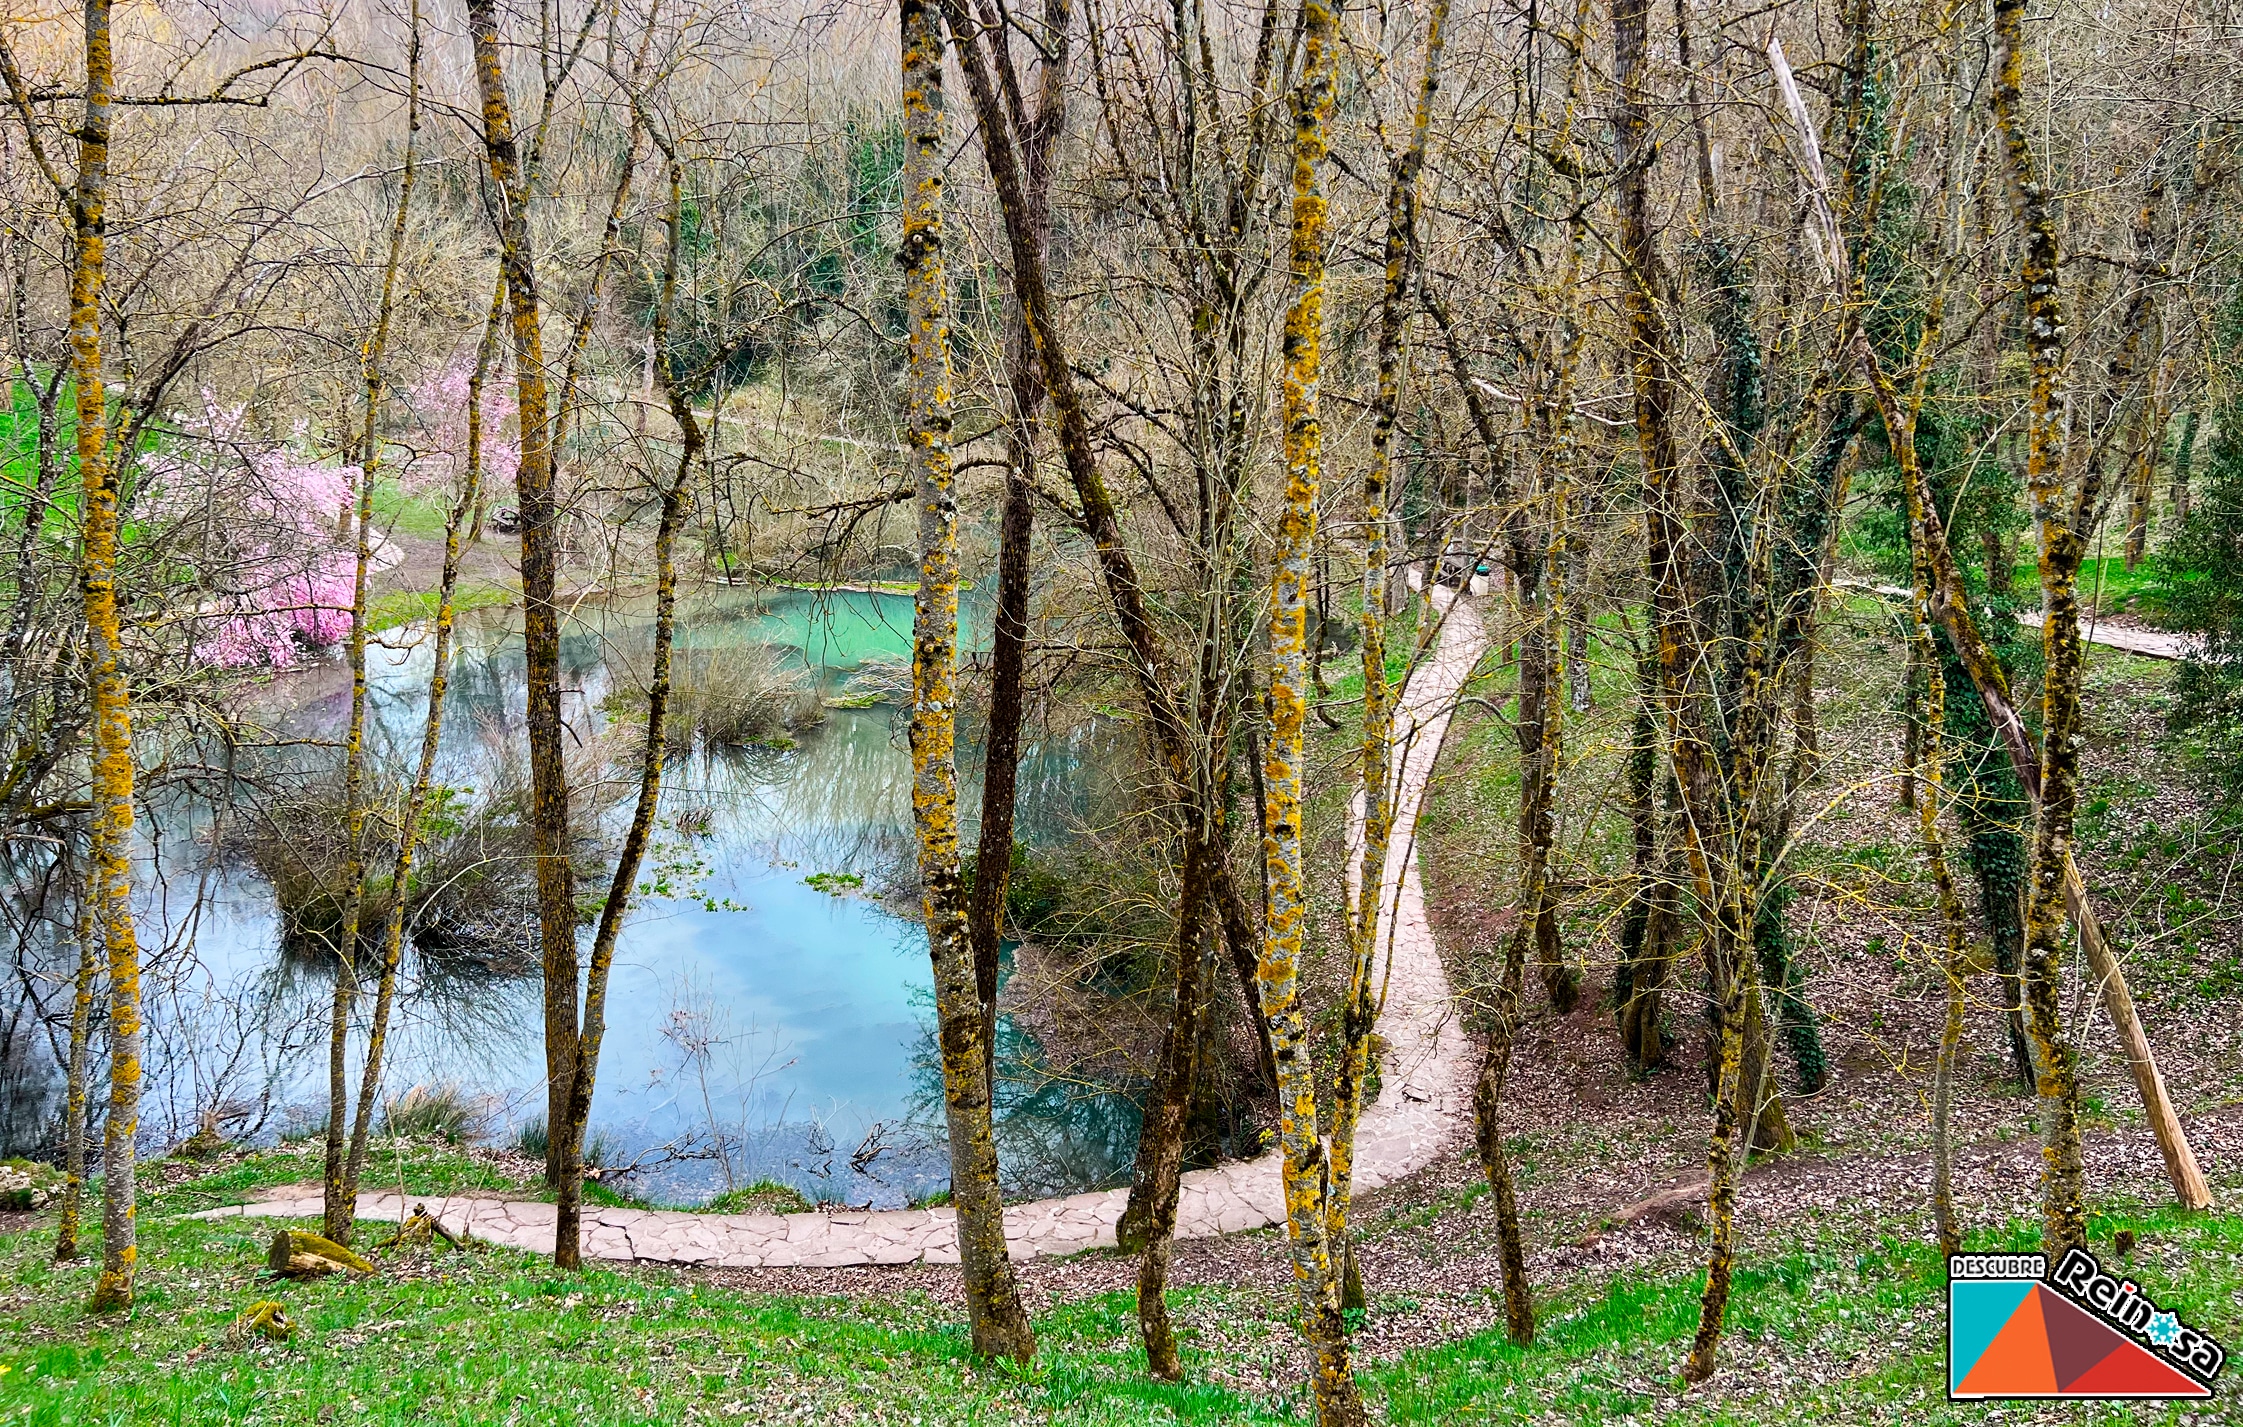 Fontibre - Nacimiento del Río Ebro